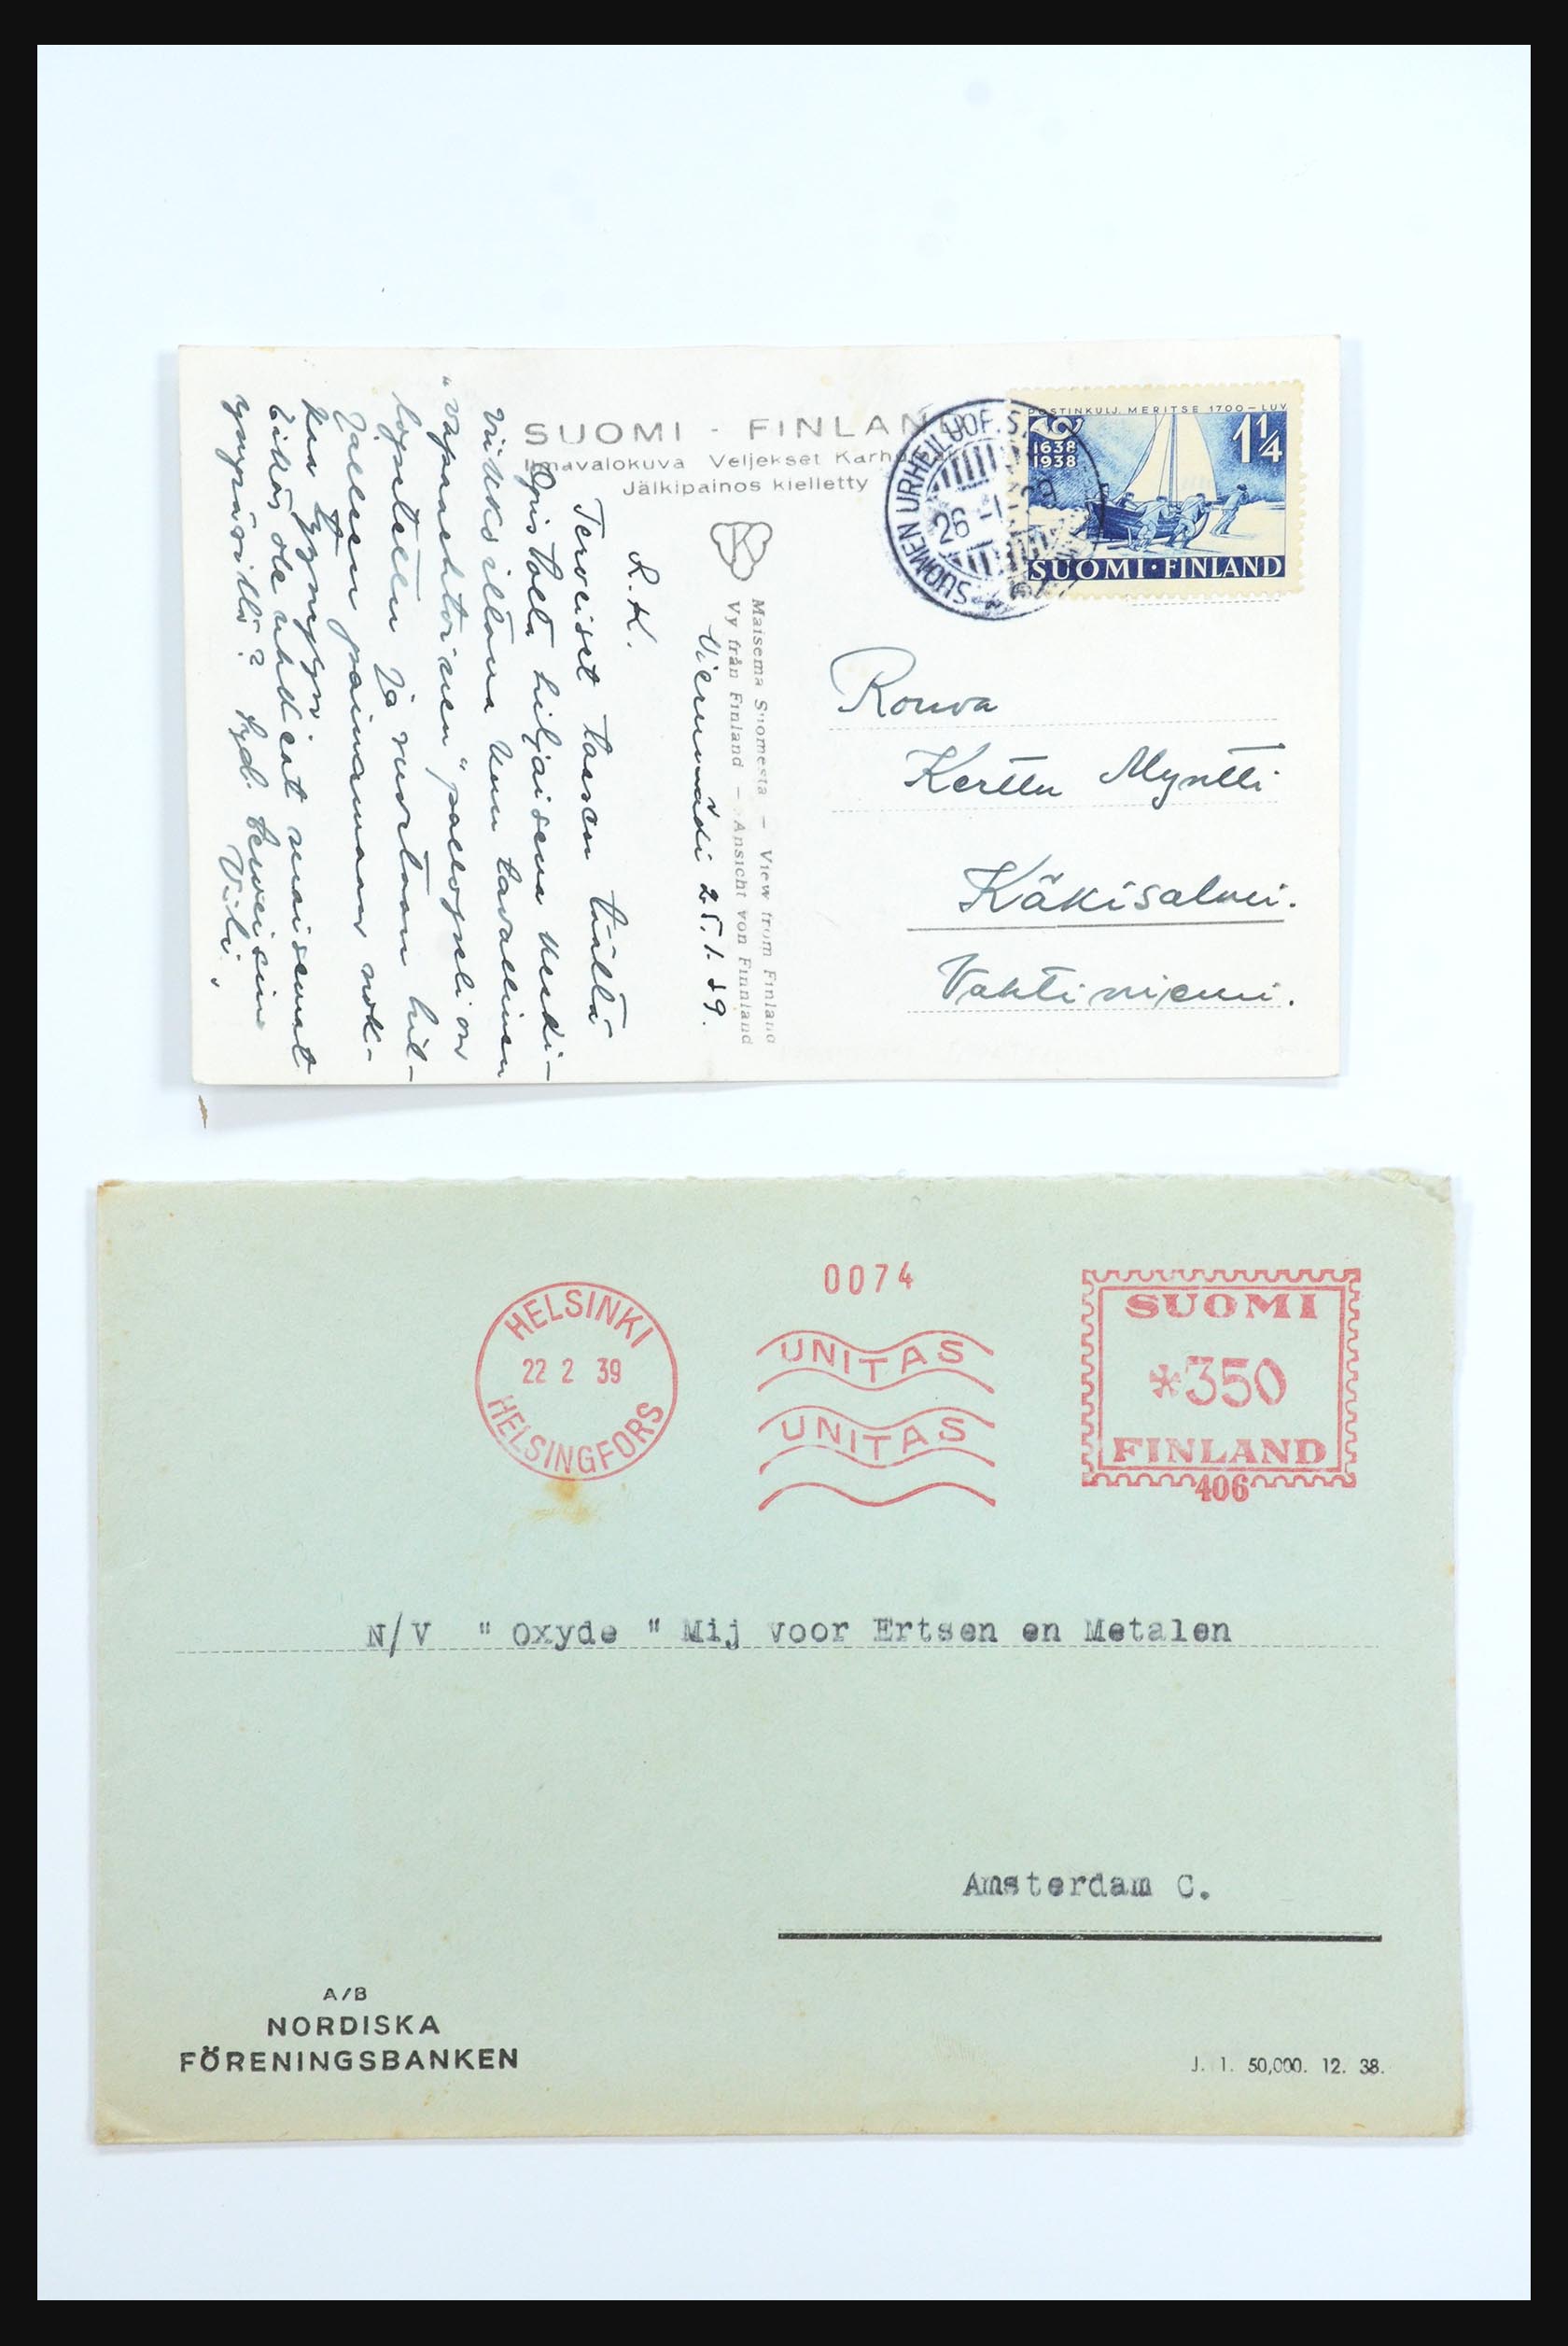 31658 072 - 31658 Finland brieven 1833-1960.